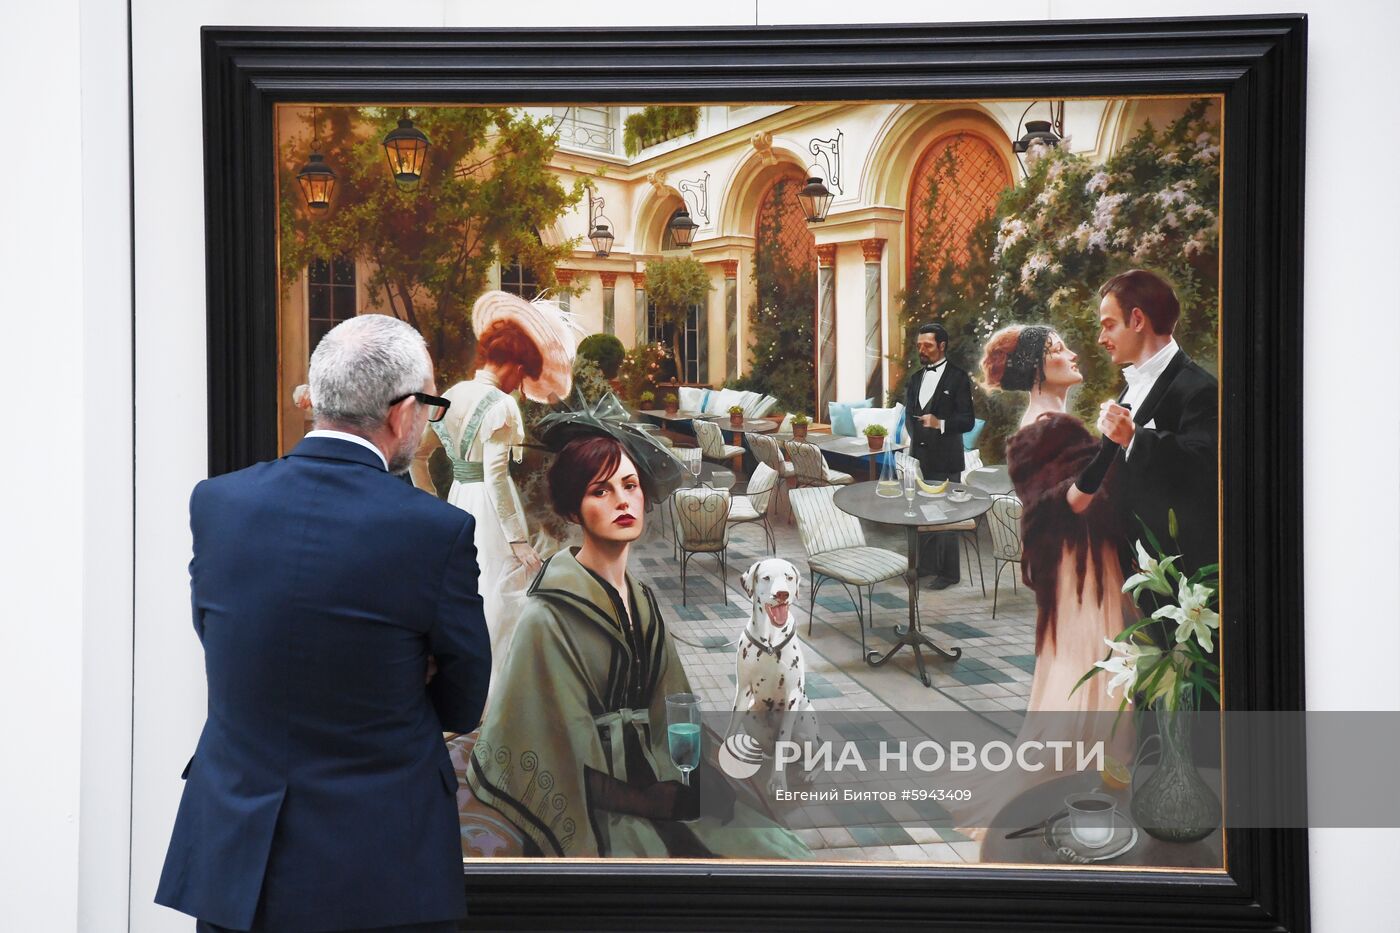 Московская художественная ярмарка в Гостином дворе